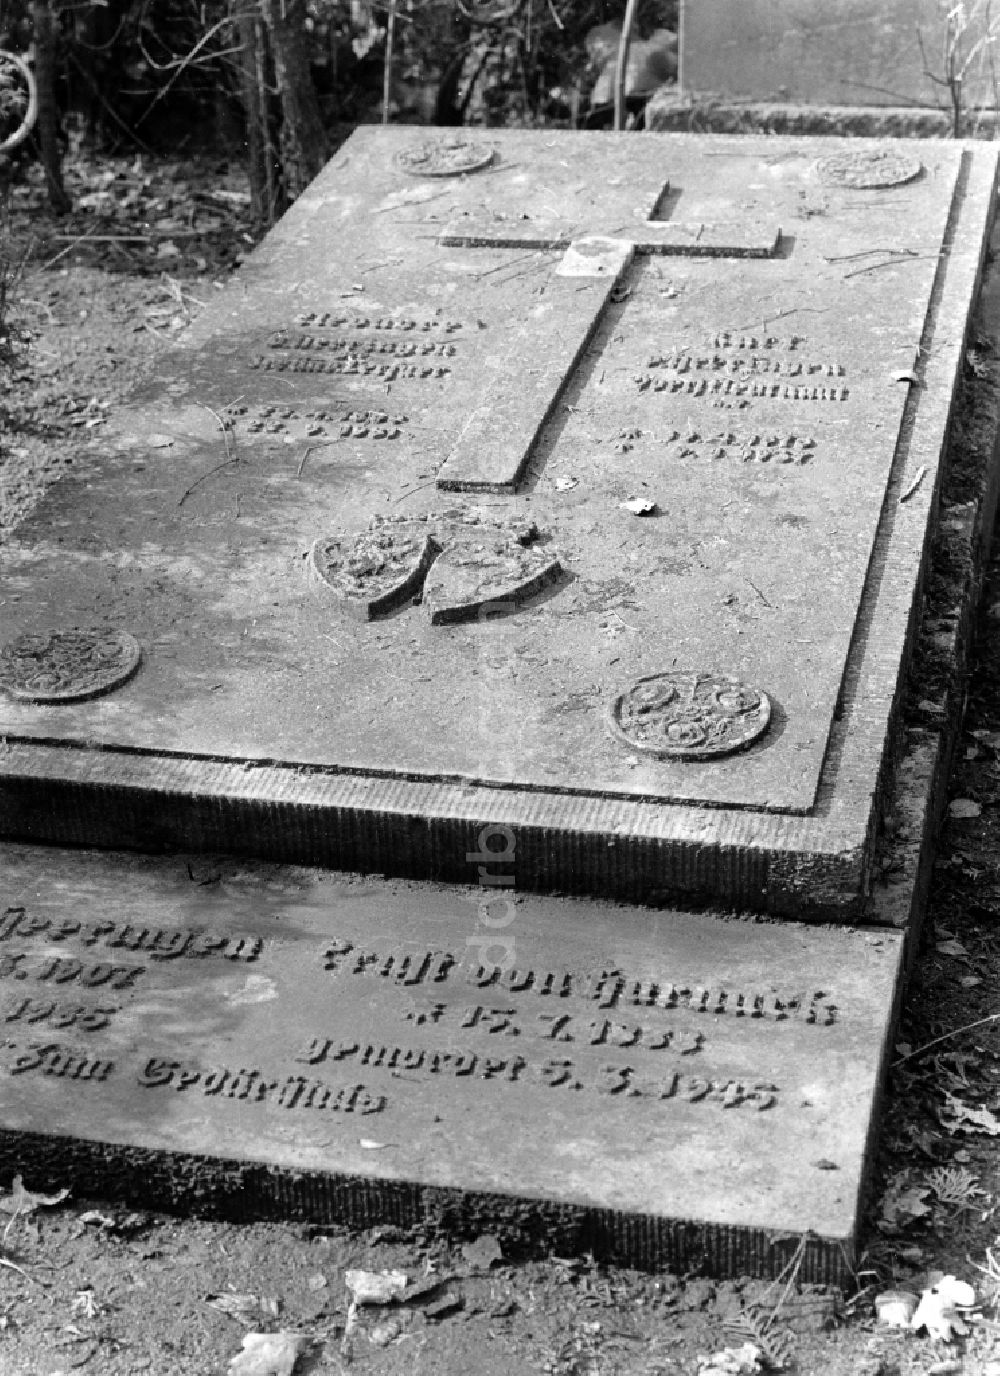 DDR-Bildarchiv: Potsdam - Gedenkstein an Ernst von Harnack am Grabstein der Familie von Heeringen auf dem Bornstedter Friedhof in Potsdam in der DDR